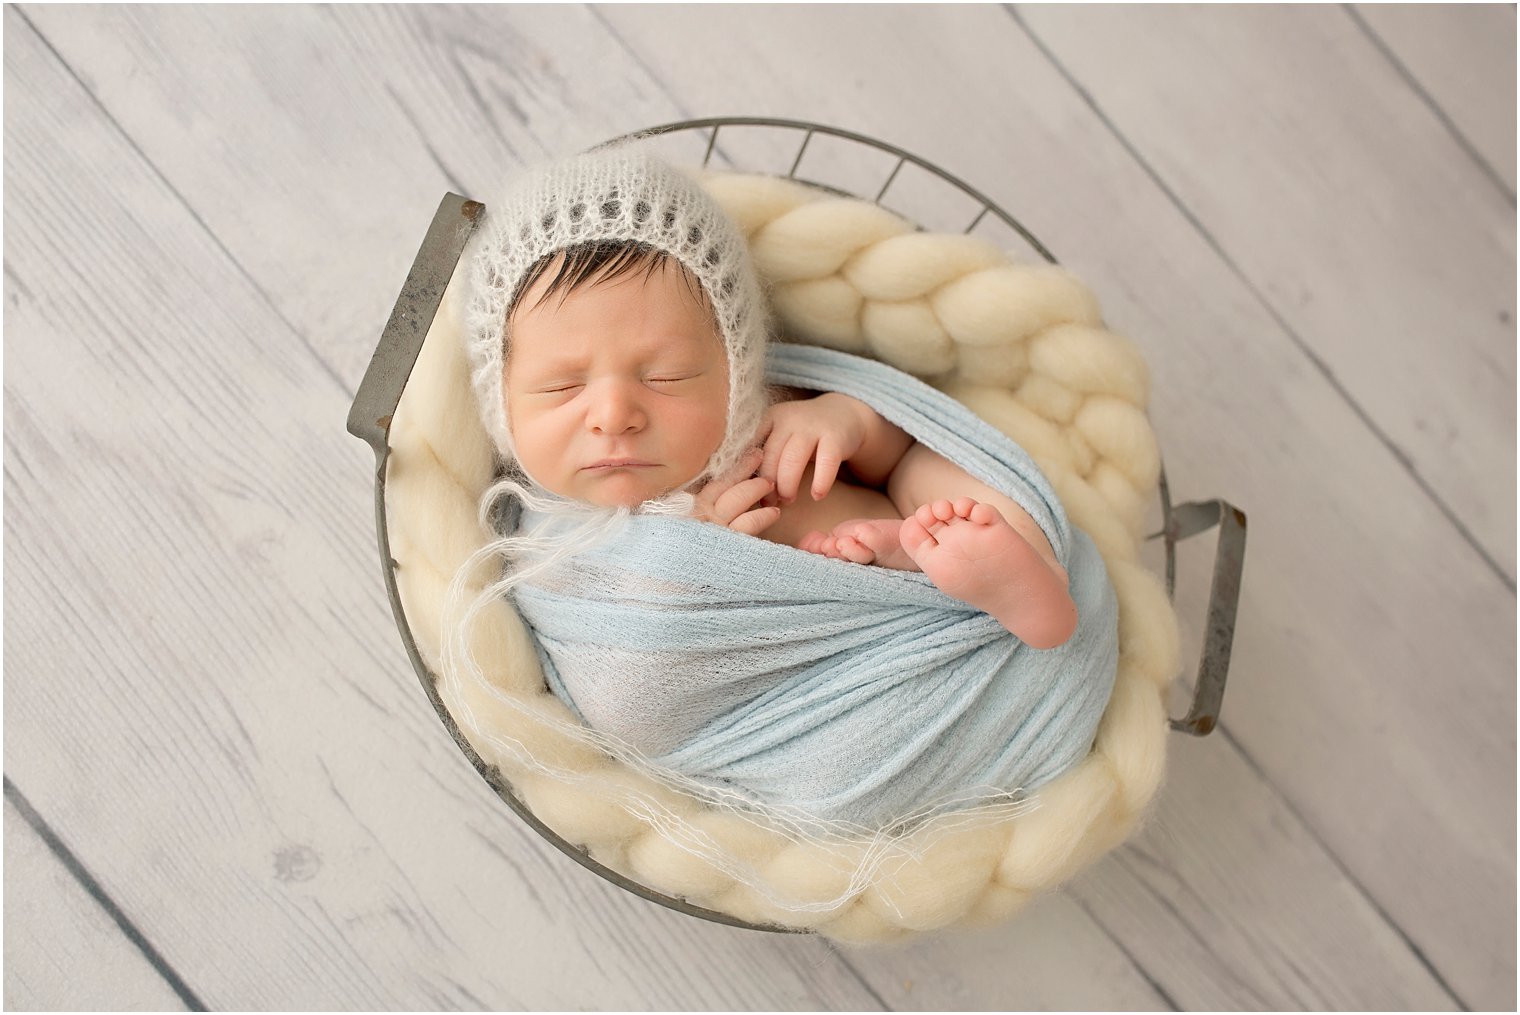 Newborn boy in bucket photo